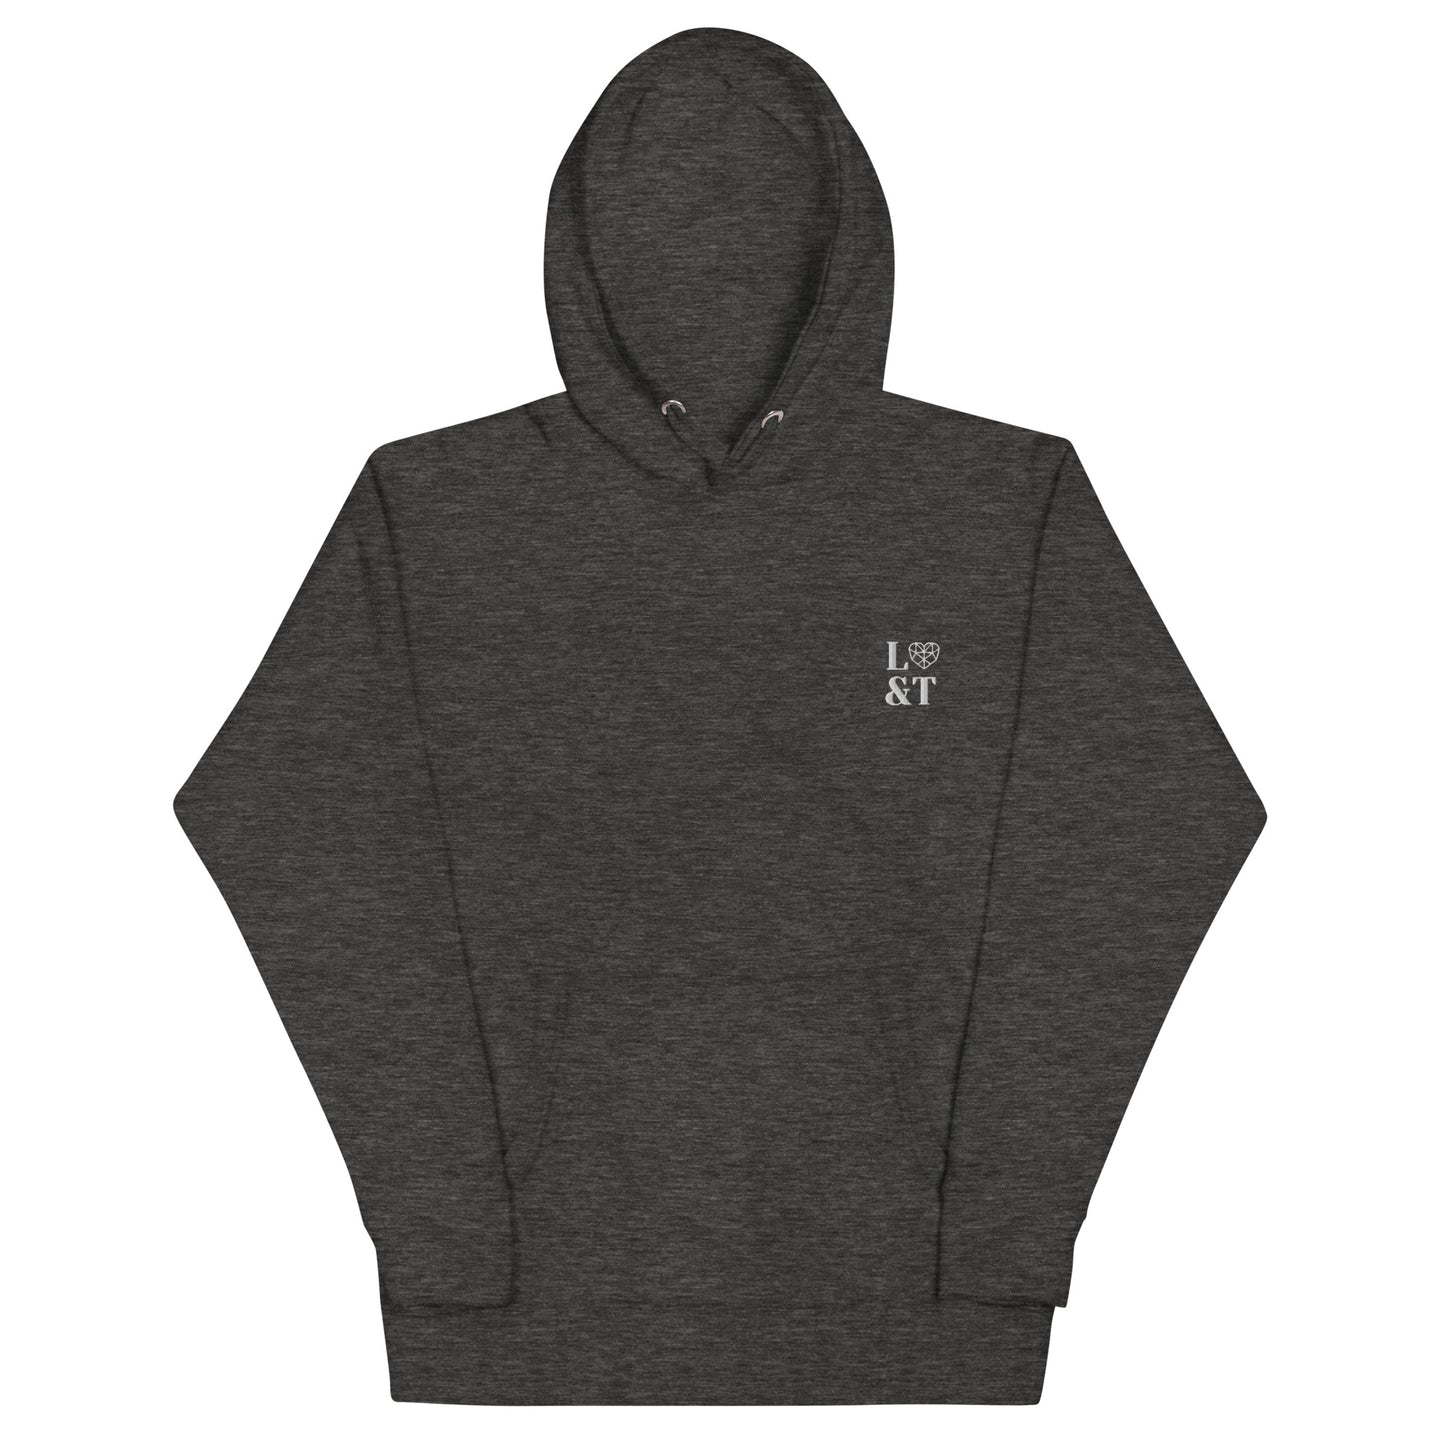 L&T Unisex Hoodie Sweatshirt